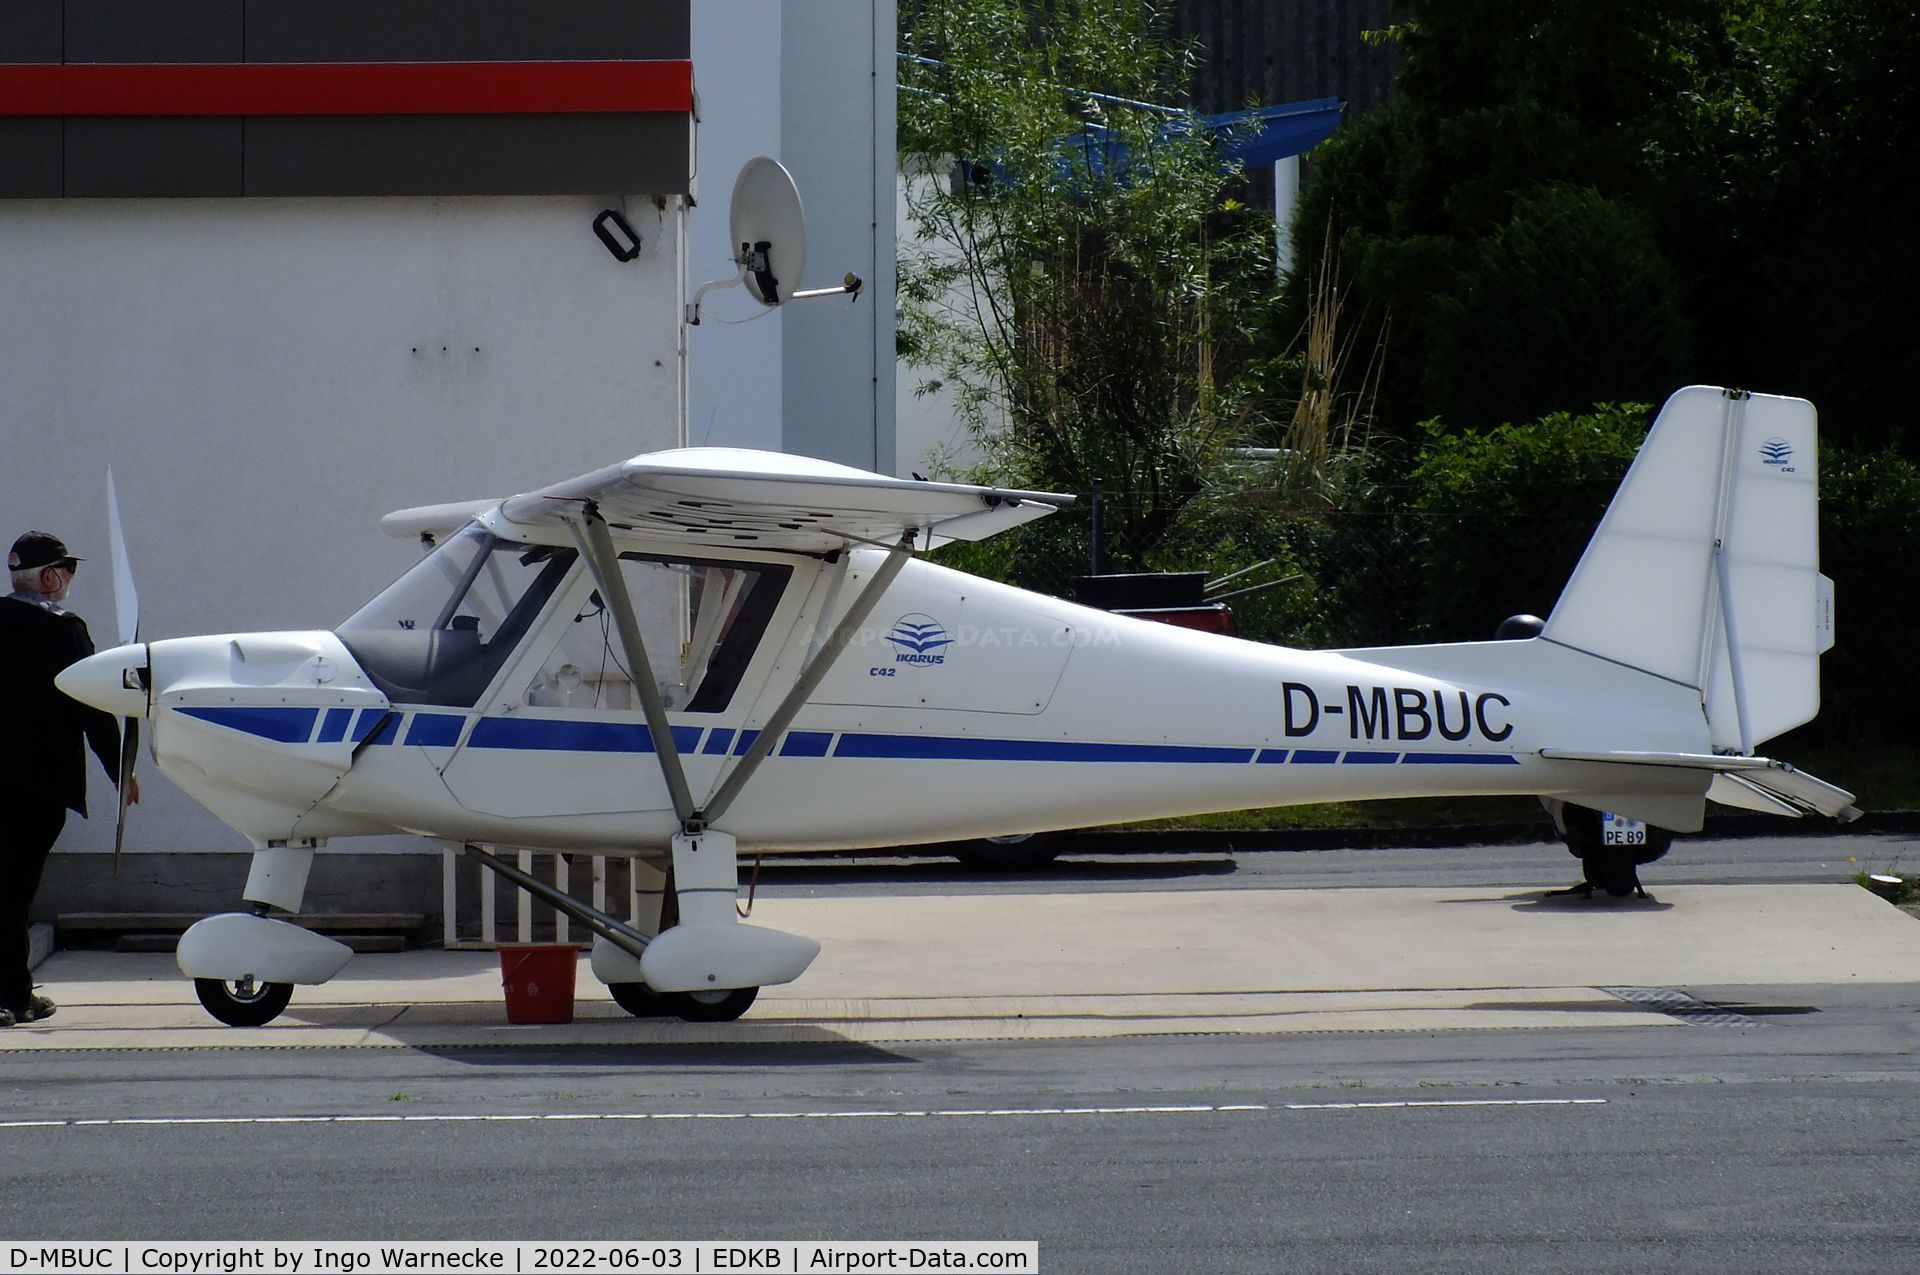 D-MBUC, 2015 Comco Ikarus C-42 C/N 1505-7393, Comco Ikarus C42 at Bonn-Hangelar airfield '2205-06